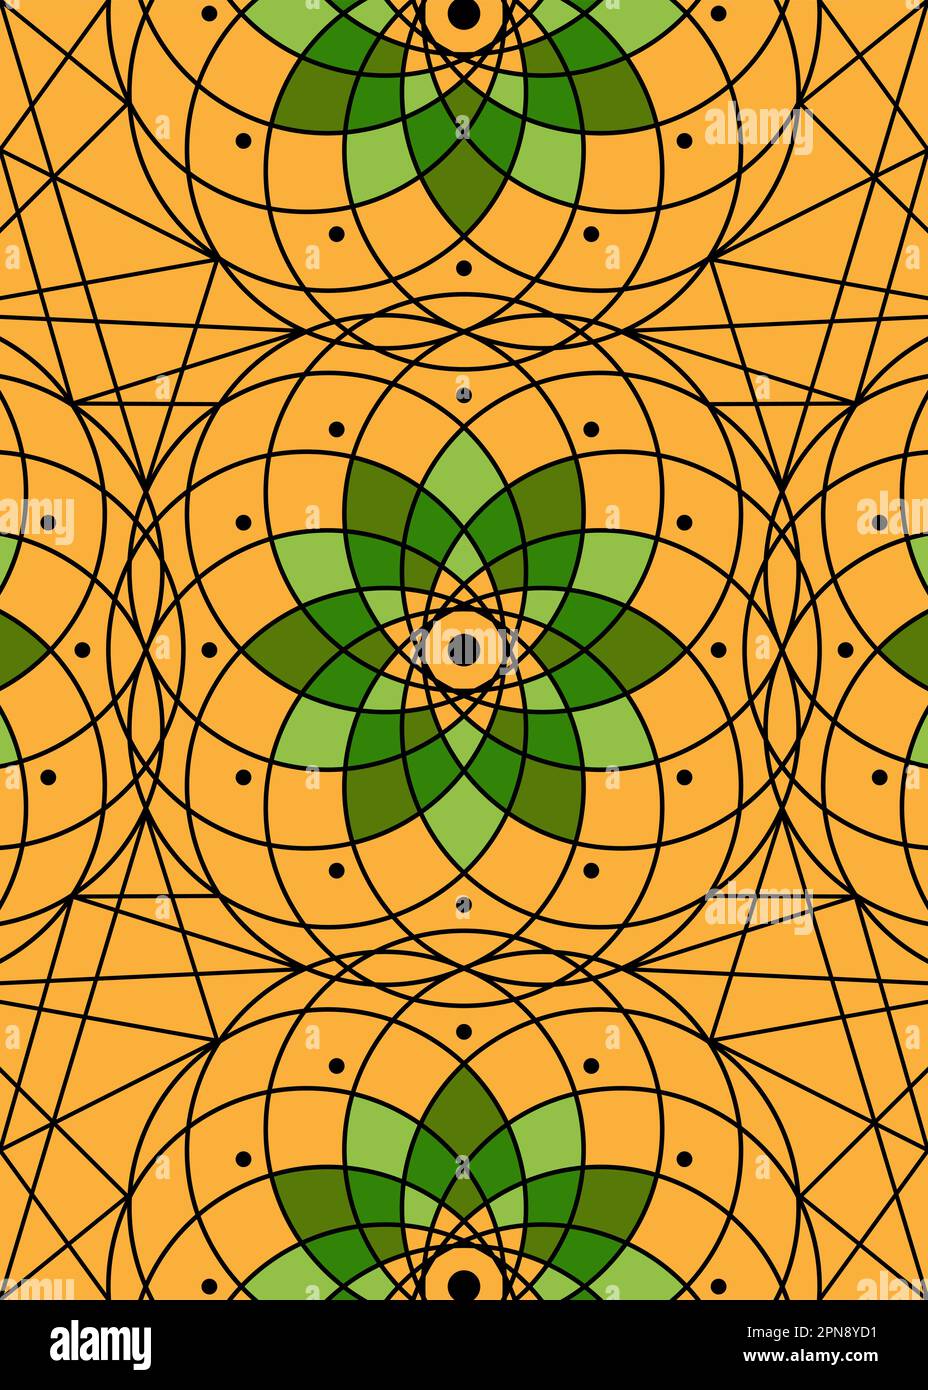 Seed of Life Symbol - Vorlage für Heilige Geometrie. Geometrische mystische Mandala des alchemischen esoterischen Lebensblütenmusters. Vektortextur göttlicher Lotus, orange Stock Vektor